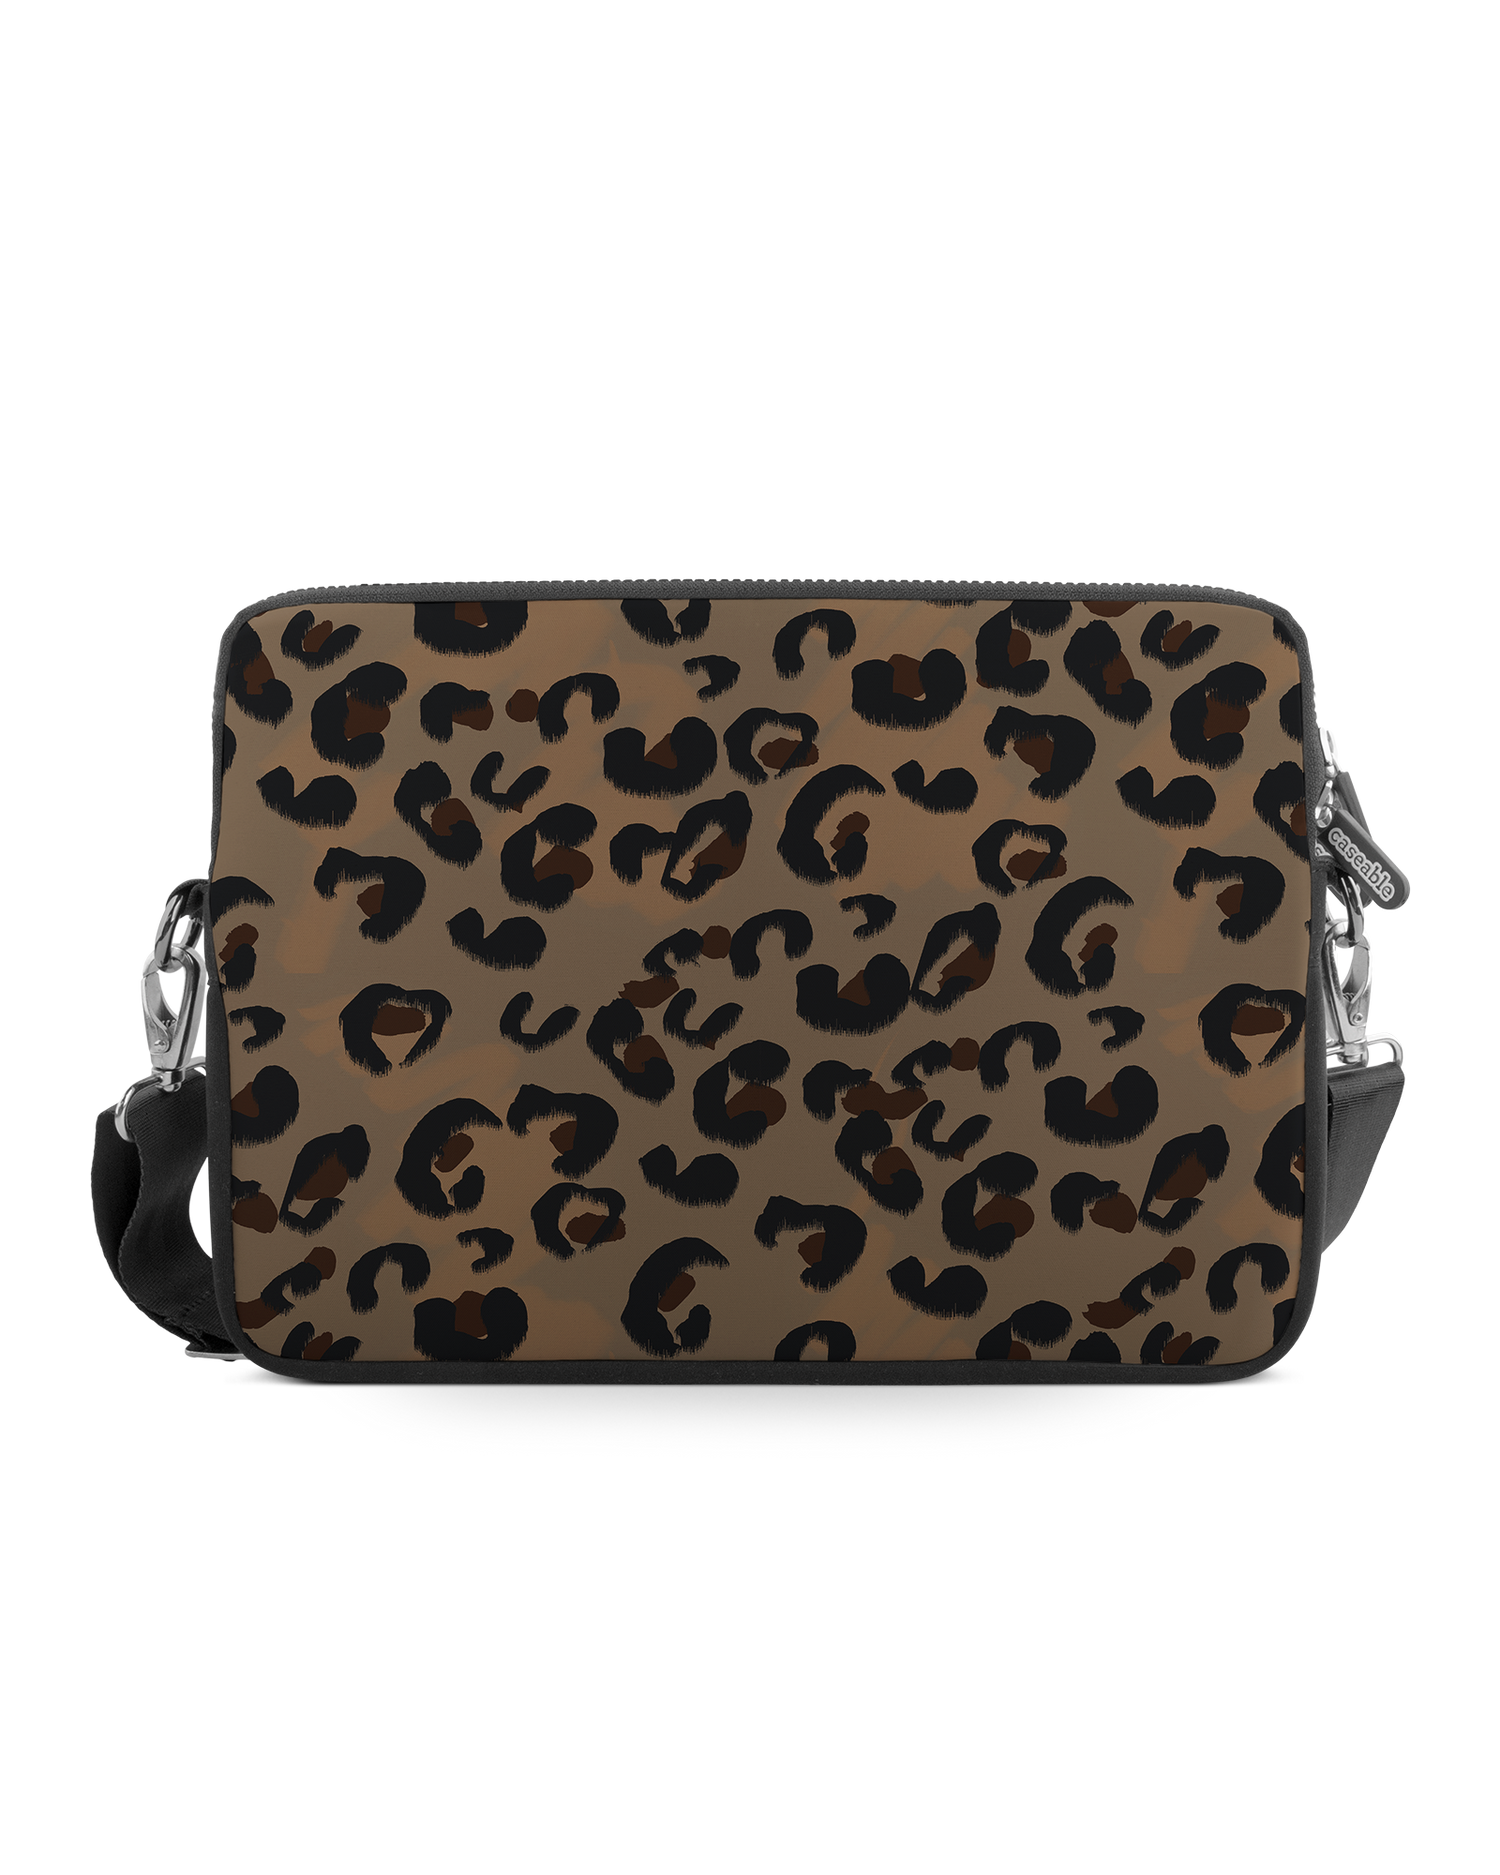 Leopard Repeat Premium Laptop Bag 13-14 inch: Front View